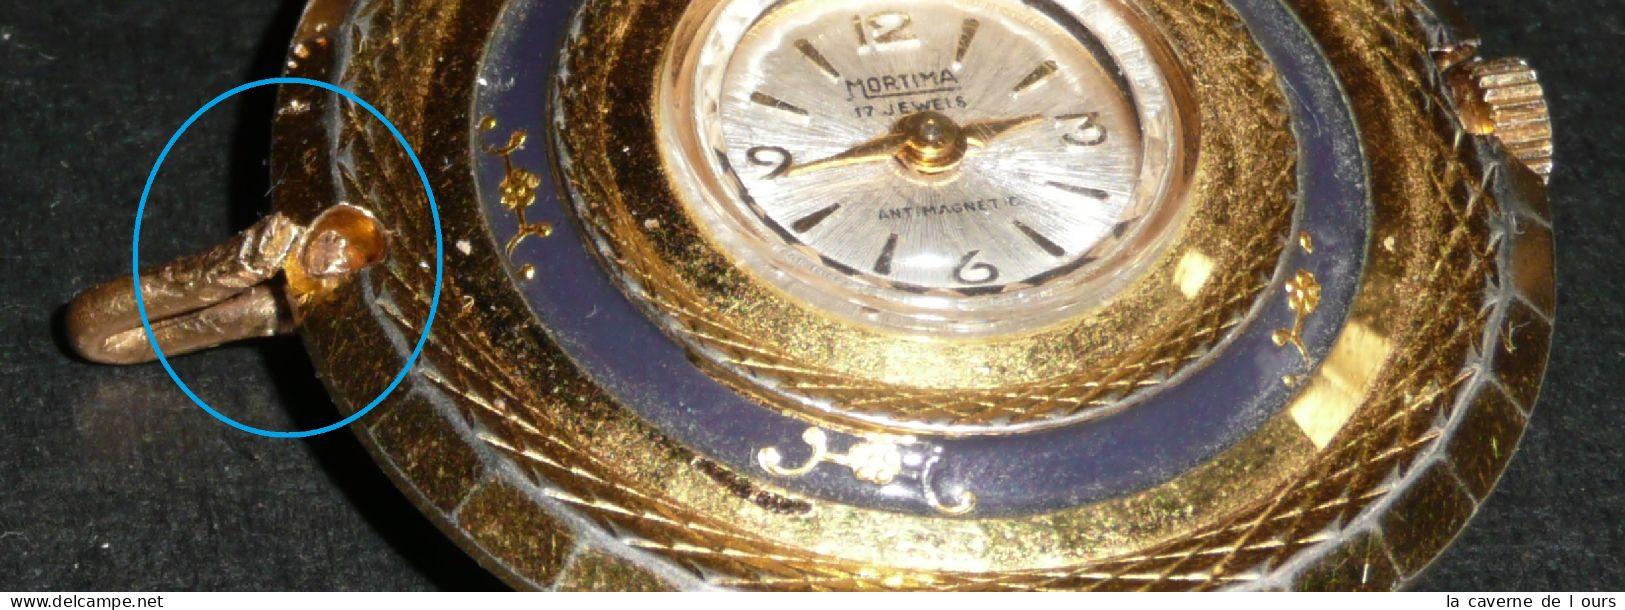 Rare Ancien Pendentif-montre Mécanique, MORTIMA 17 Jewels, Décor Fleurs, Gousset - Taschenuhren